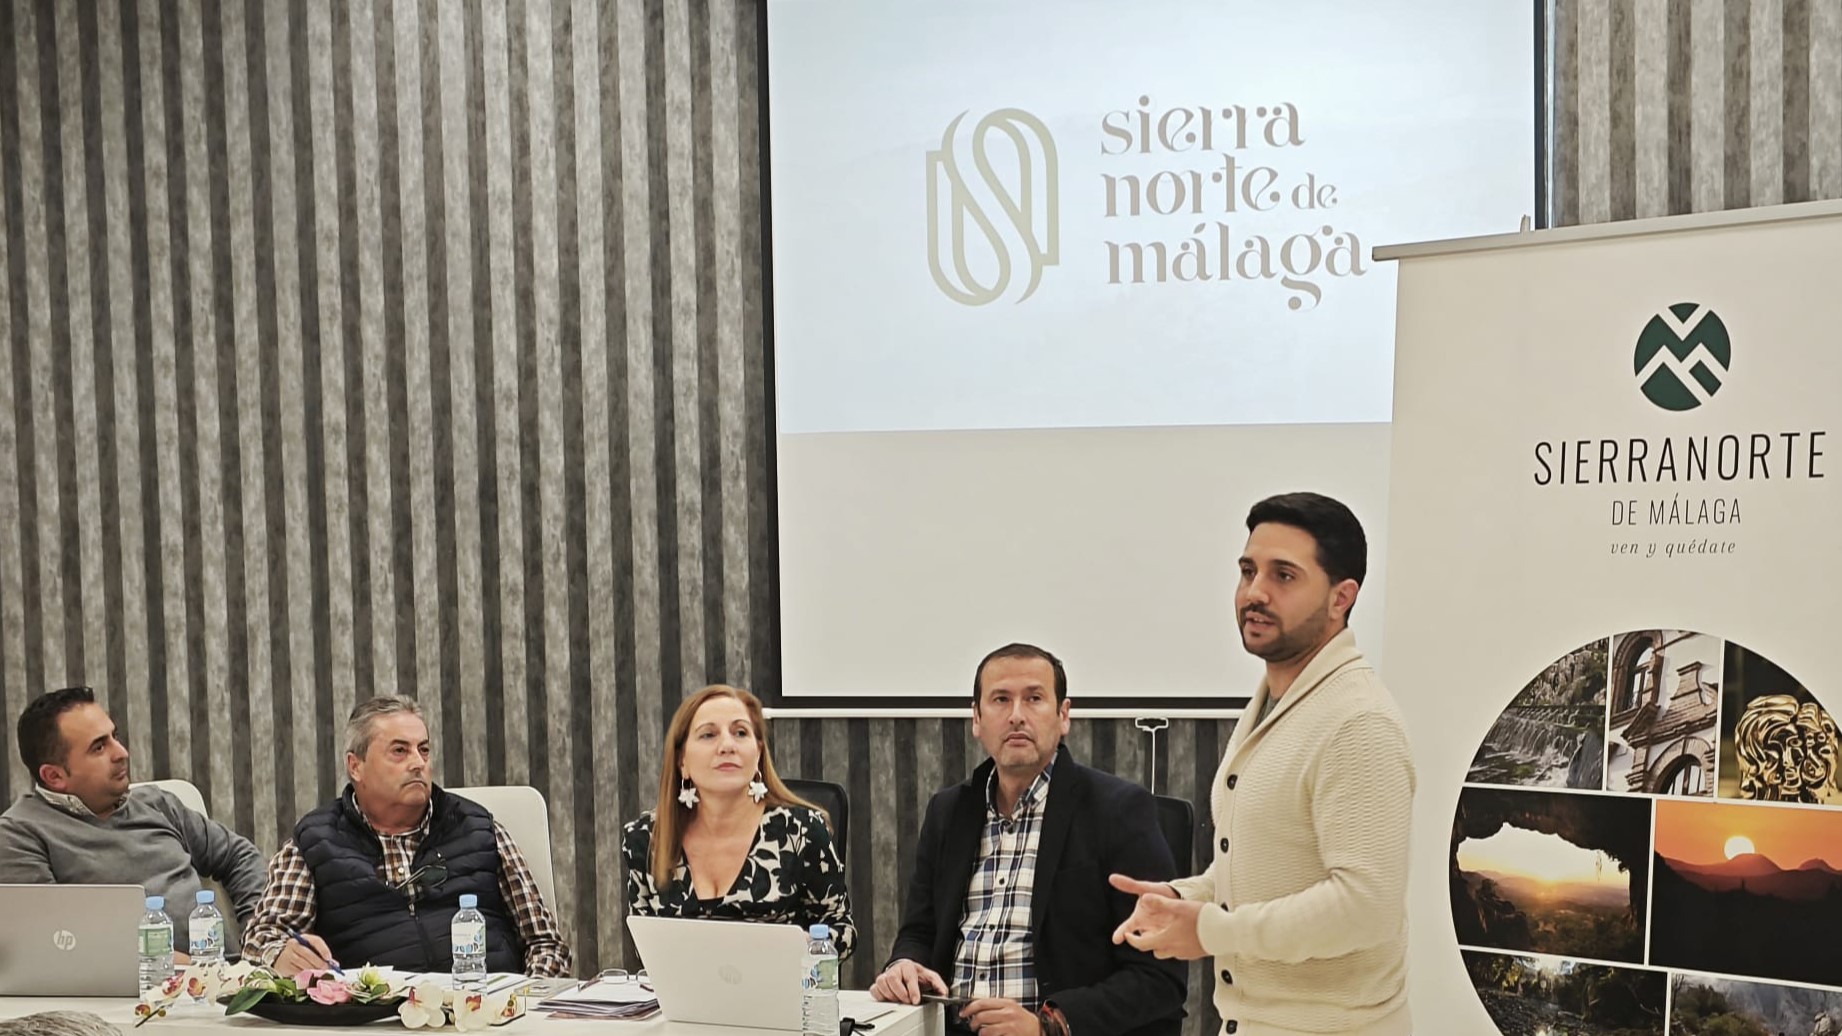 Presentación de la nueva identidad corporativa de la Sierra Norte de Málaga